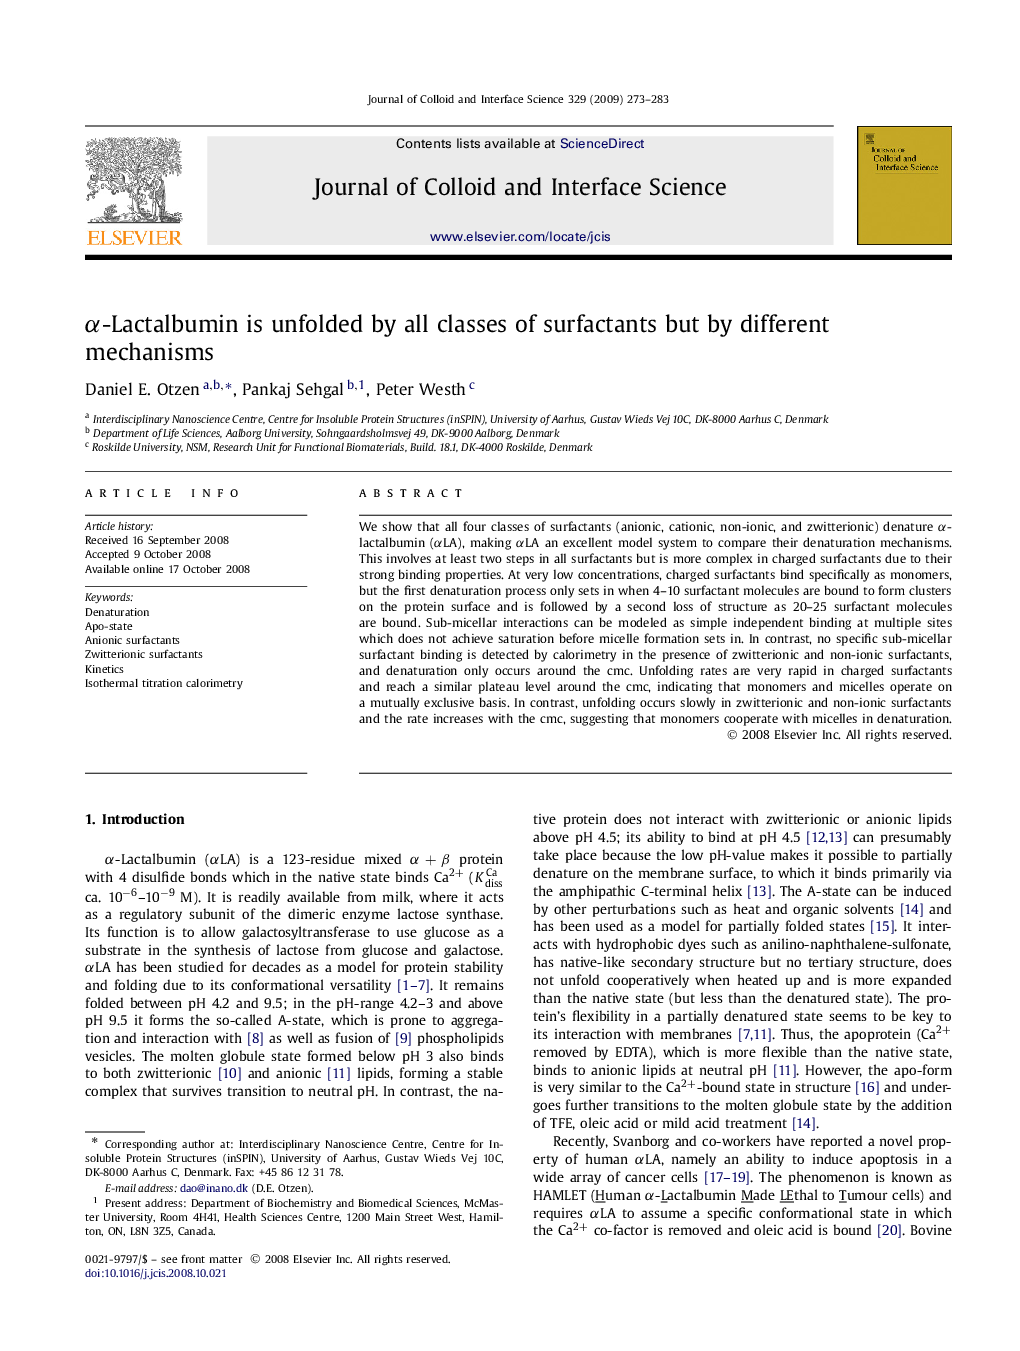 α-Lactalbumin is unfolded by all classes of surfactants but by different mechanisms